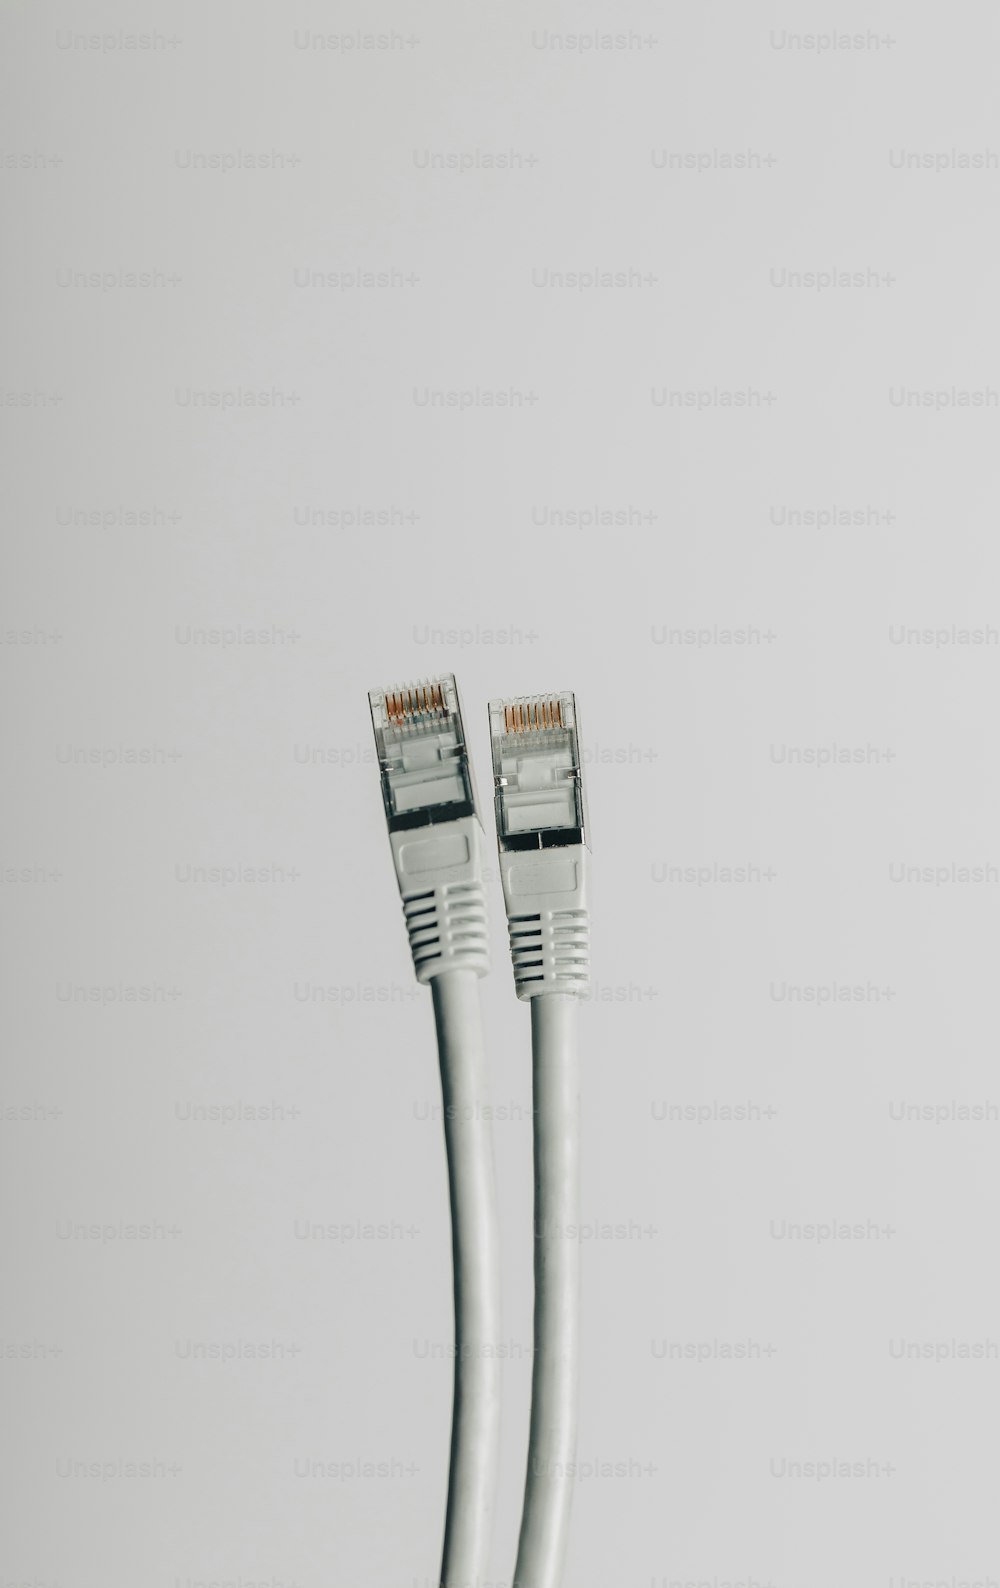 Un par de cables blancos conectados entre sí